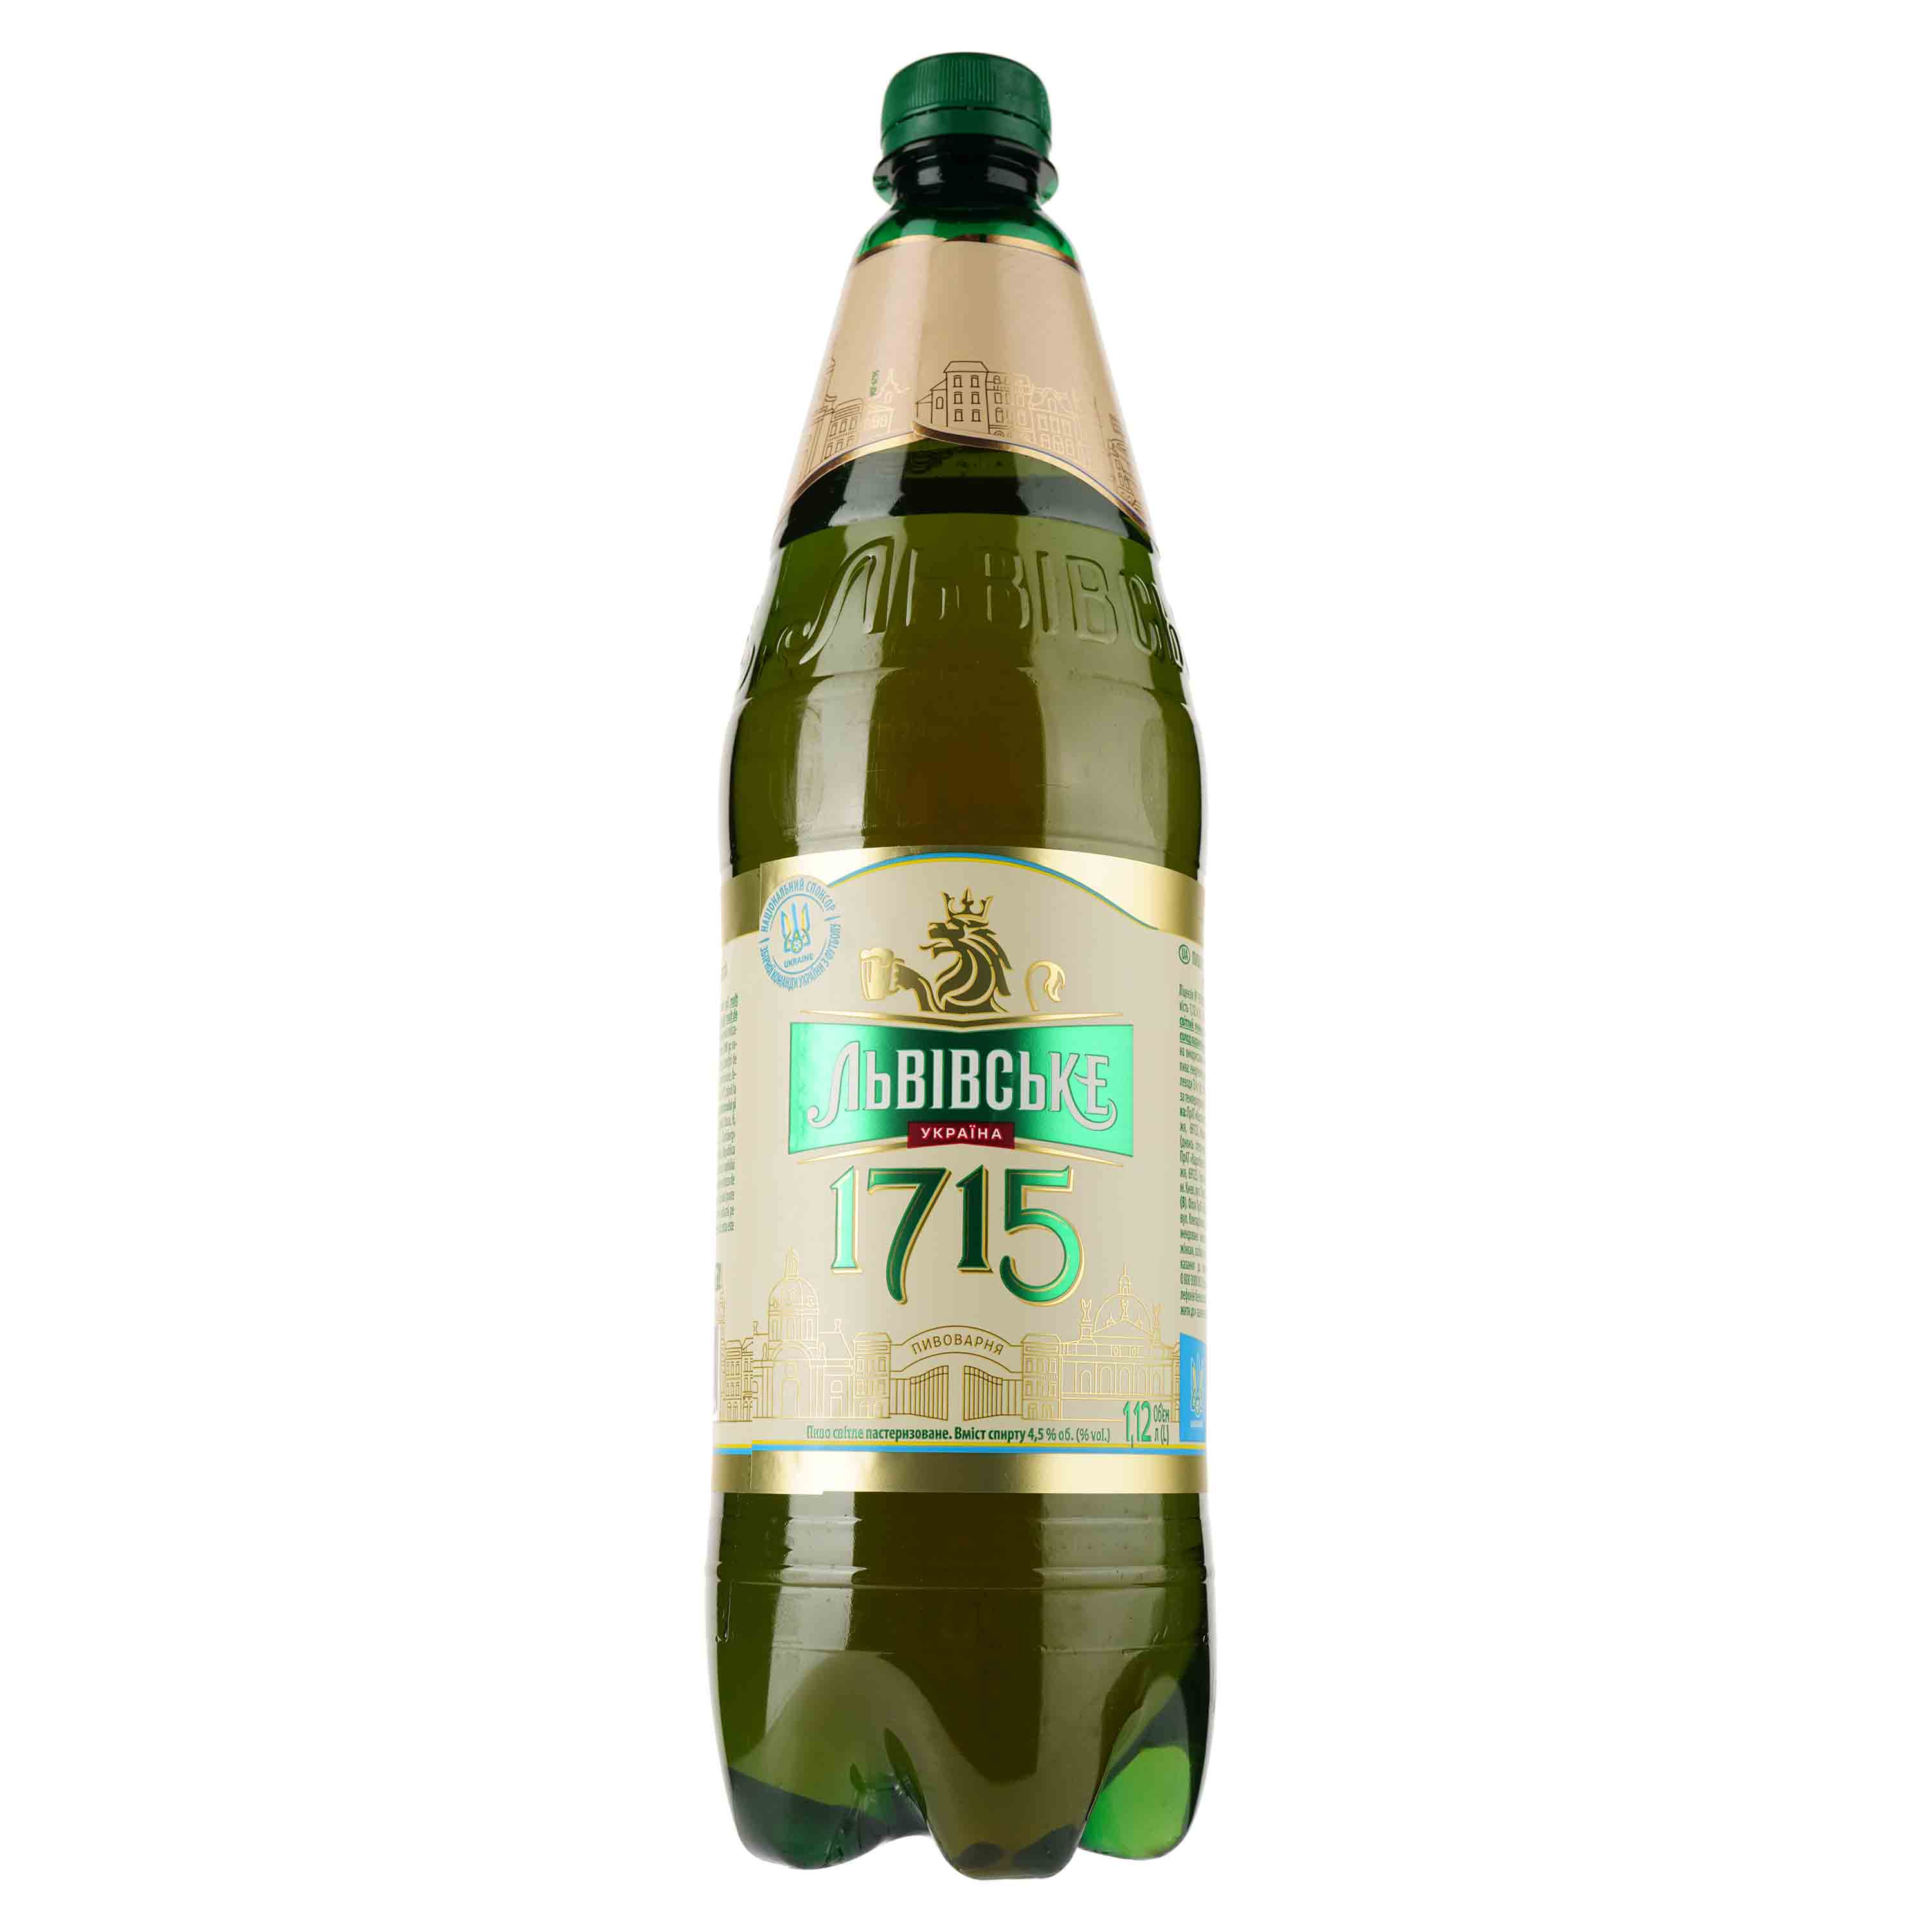 Пиво Львівське 1715, светлое, 4,5%, 1,12 л (921564) - фото 1